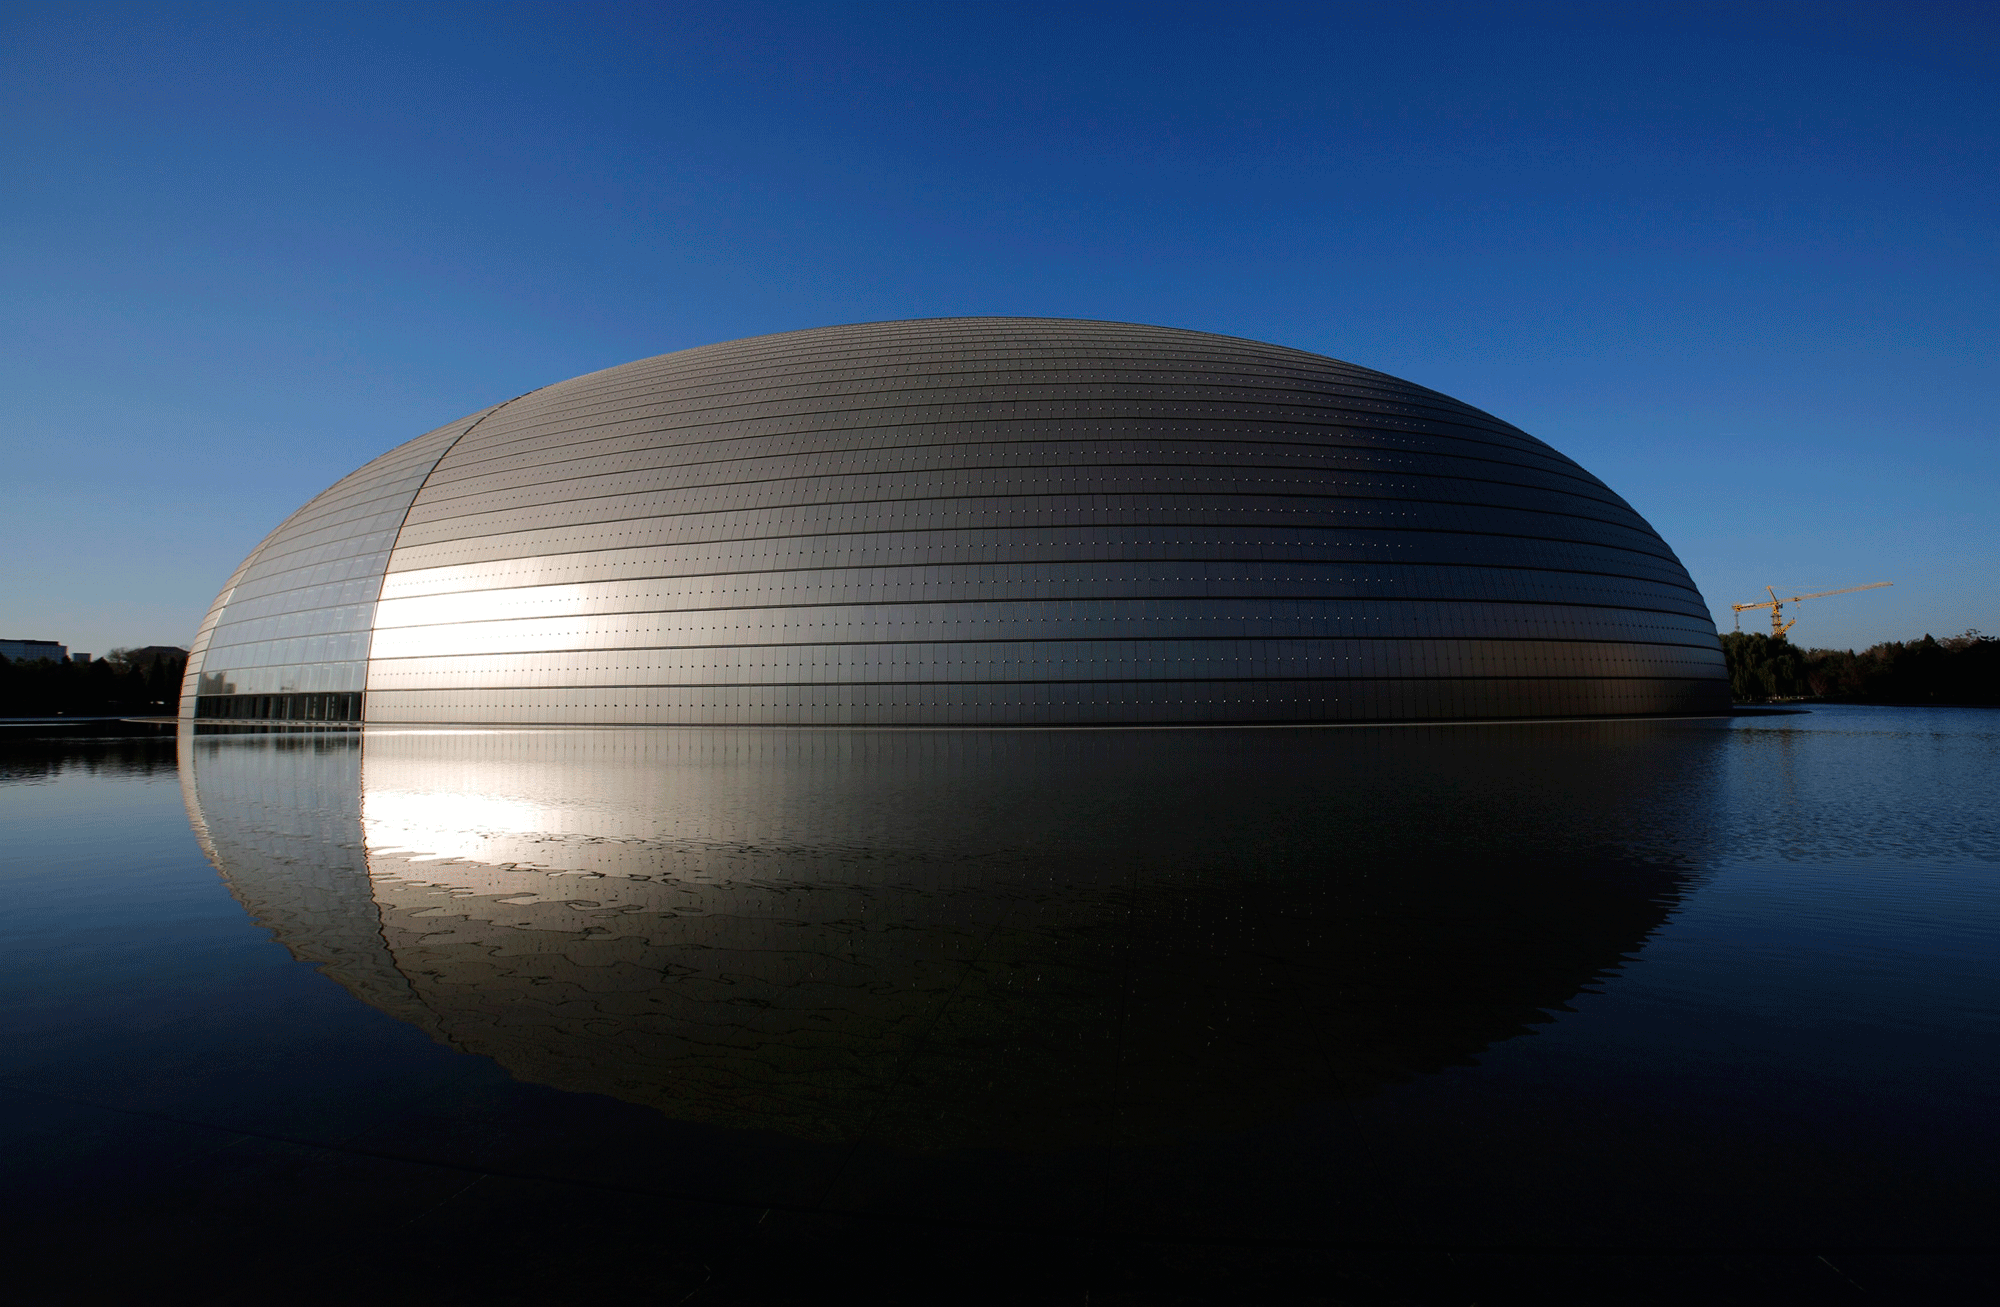 Национальный центр исполнительских искусств в Пекине («Яйцо») в солнечный день и в день со смогом